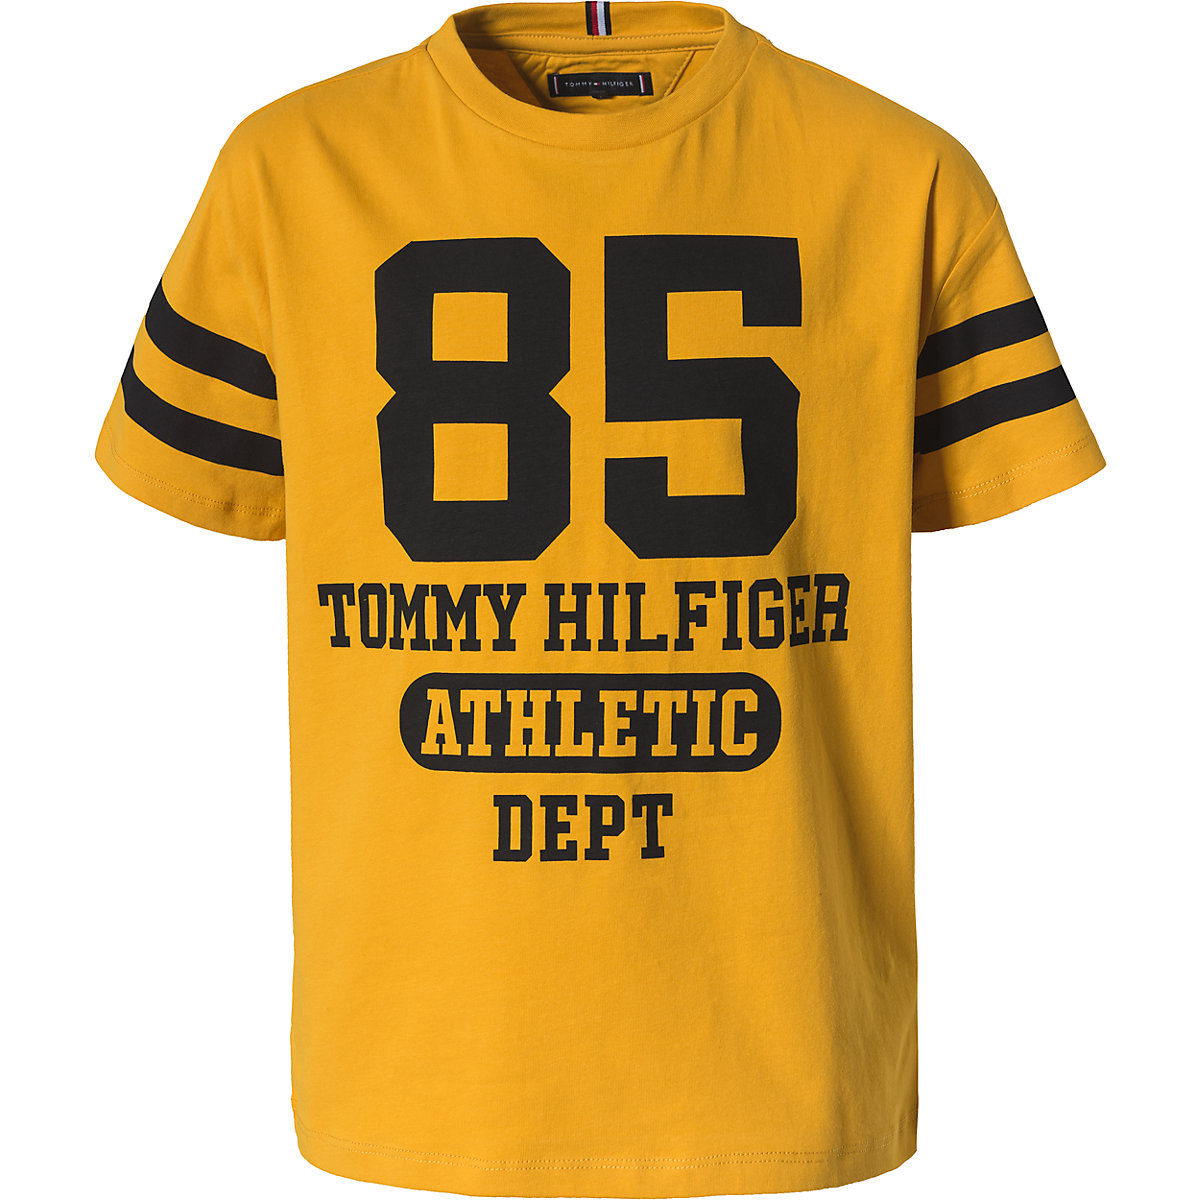 TOMMY HILFIGER T-Shirt für Jungen gelb